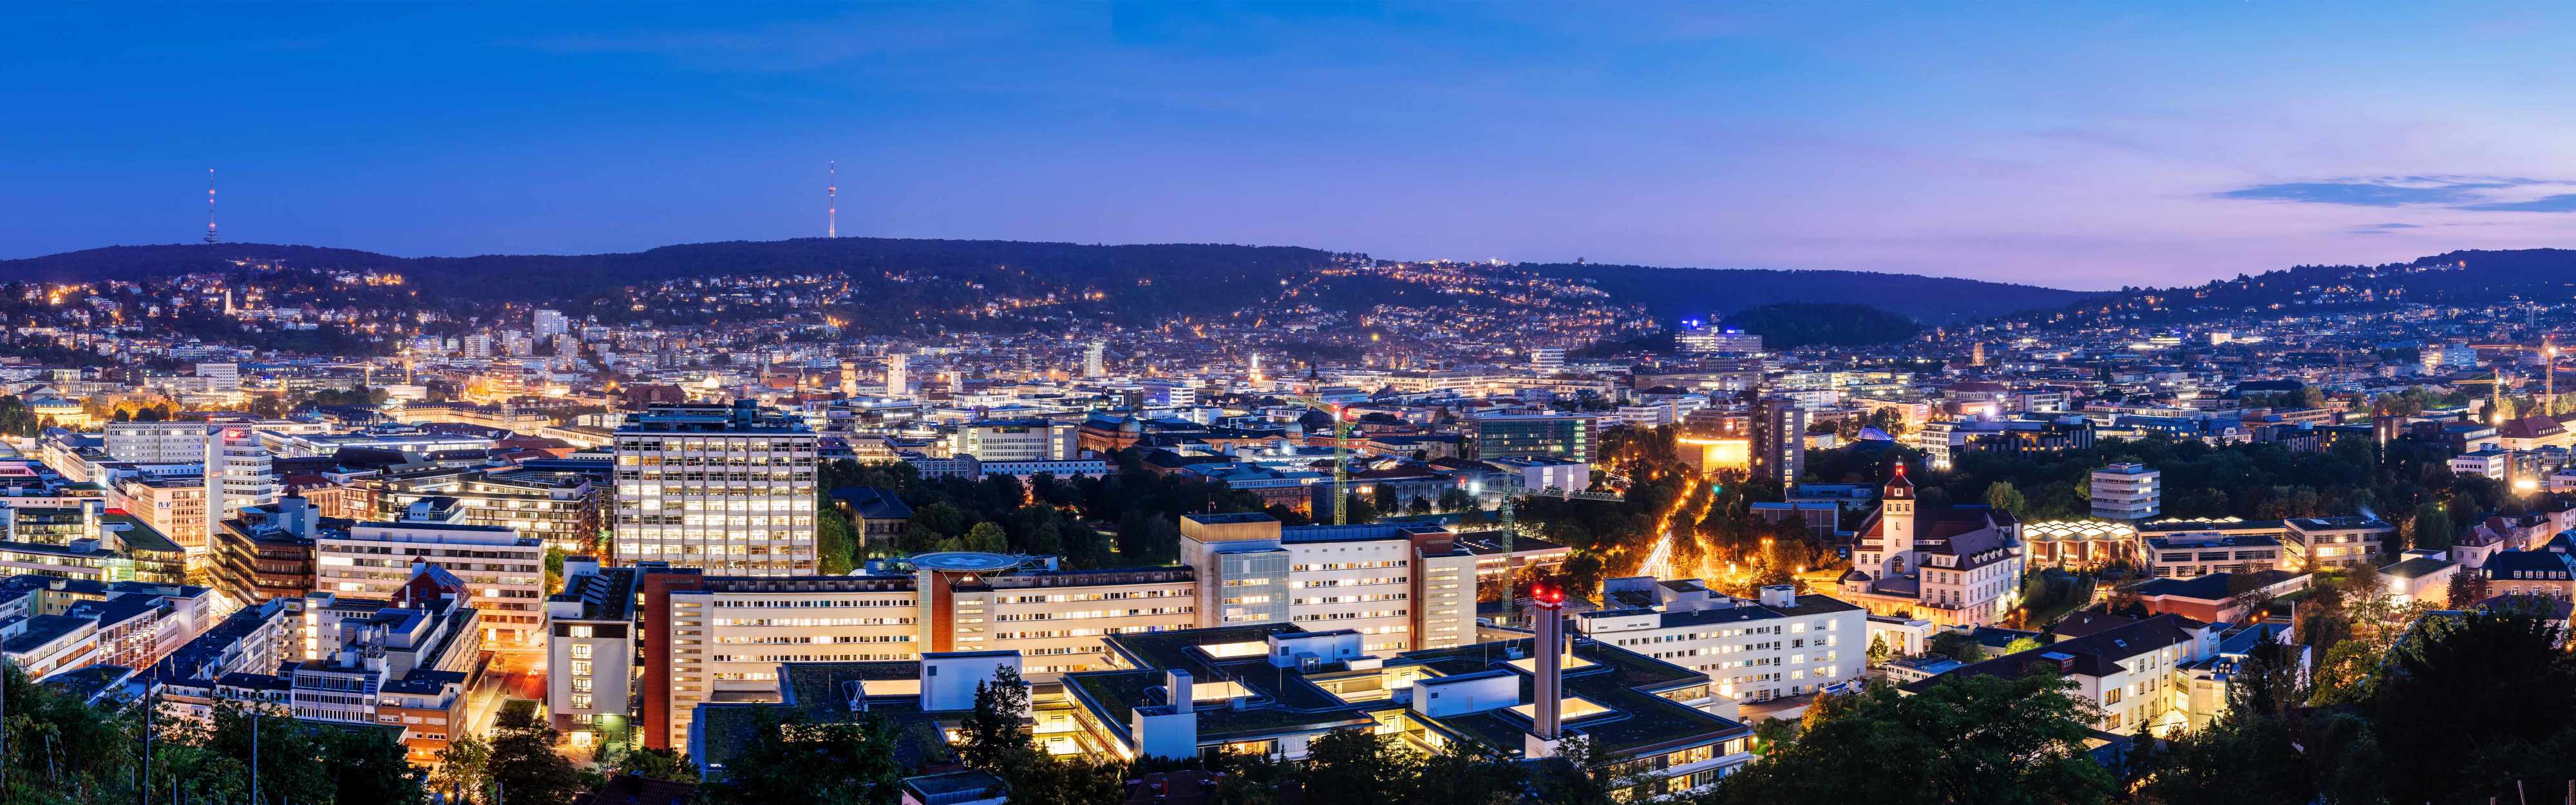 Panorama-Ansicht der Stadt Stuttgart bei Nacht